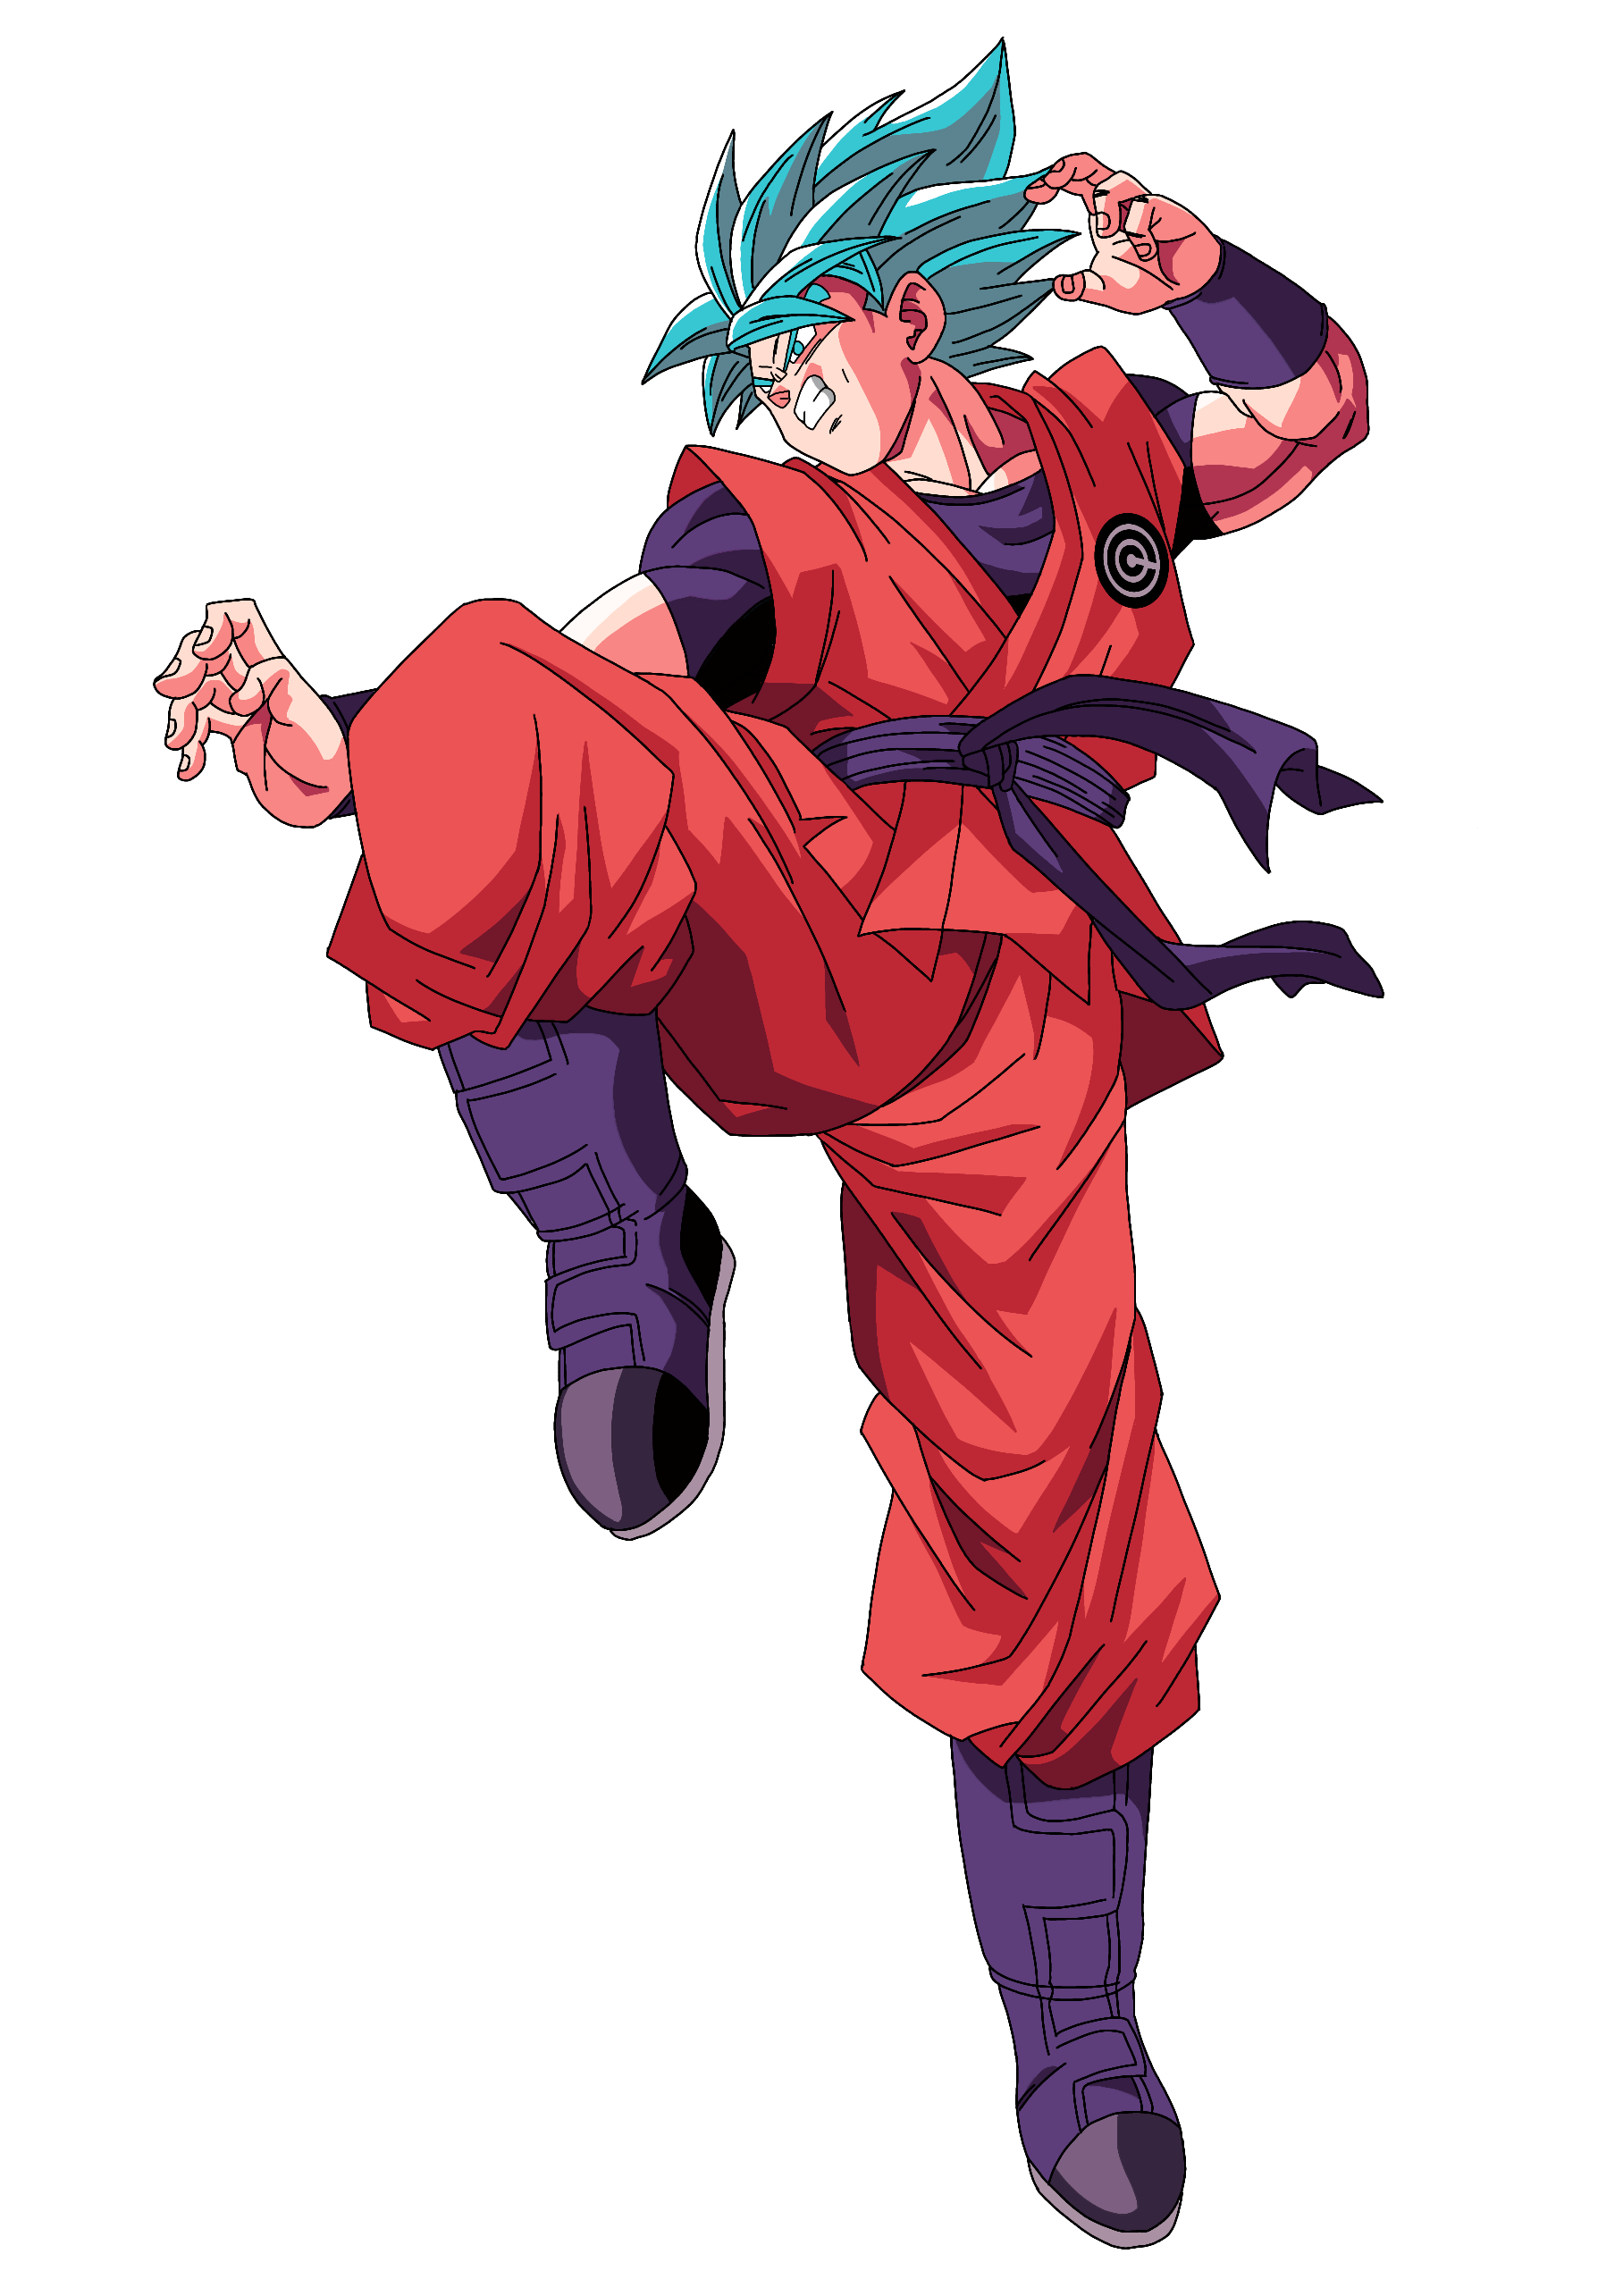 Goku Ssgss Kaioken Super Dragon Ball Heroes By Nekigm0714 On Deviantart